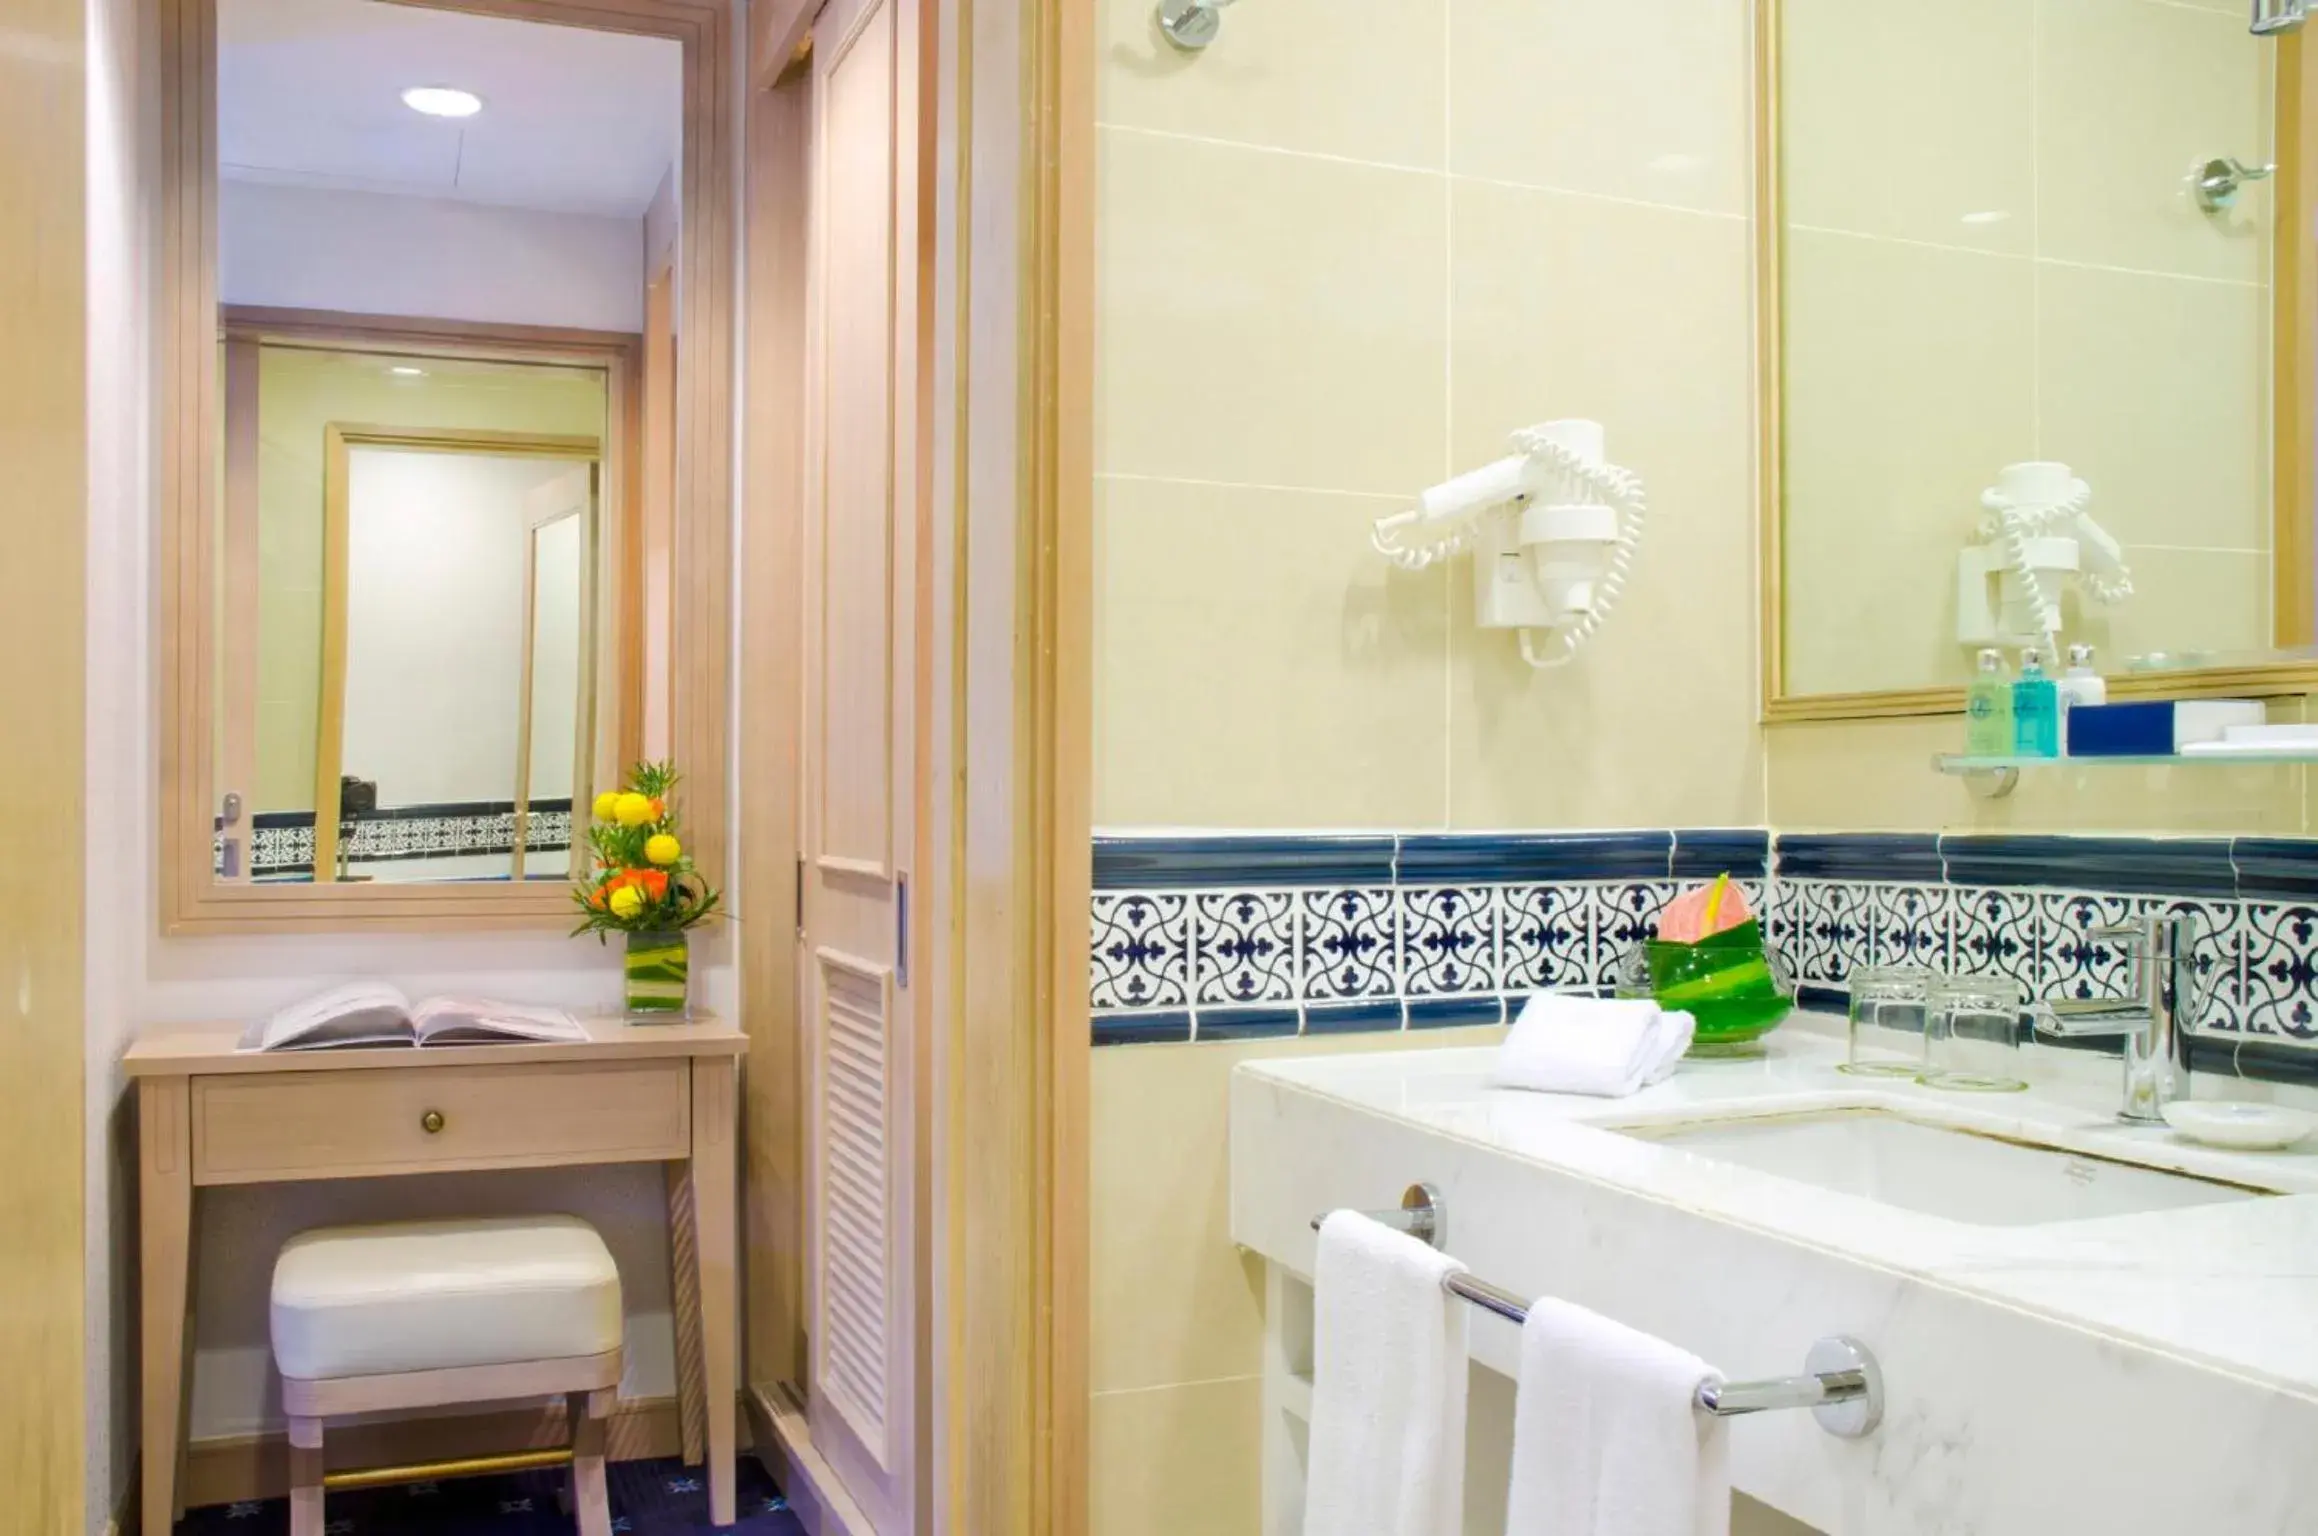 Bedroom, Bathroom in Royale Chulan Penang